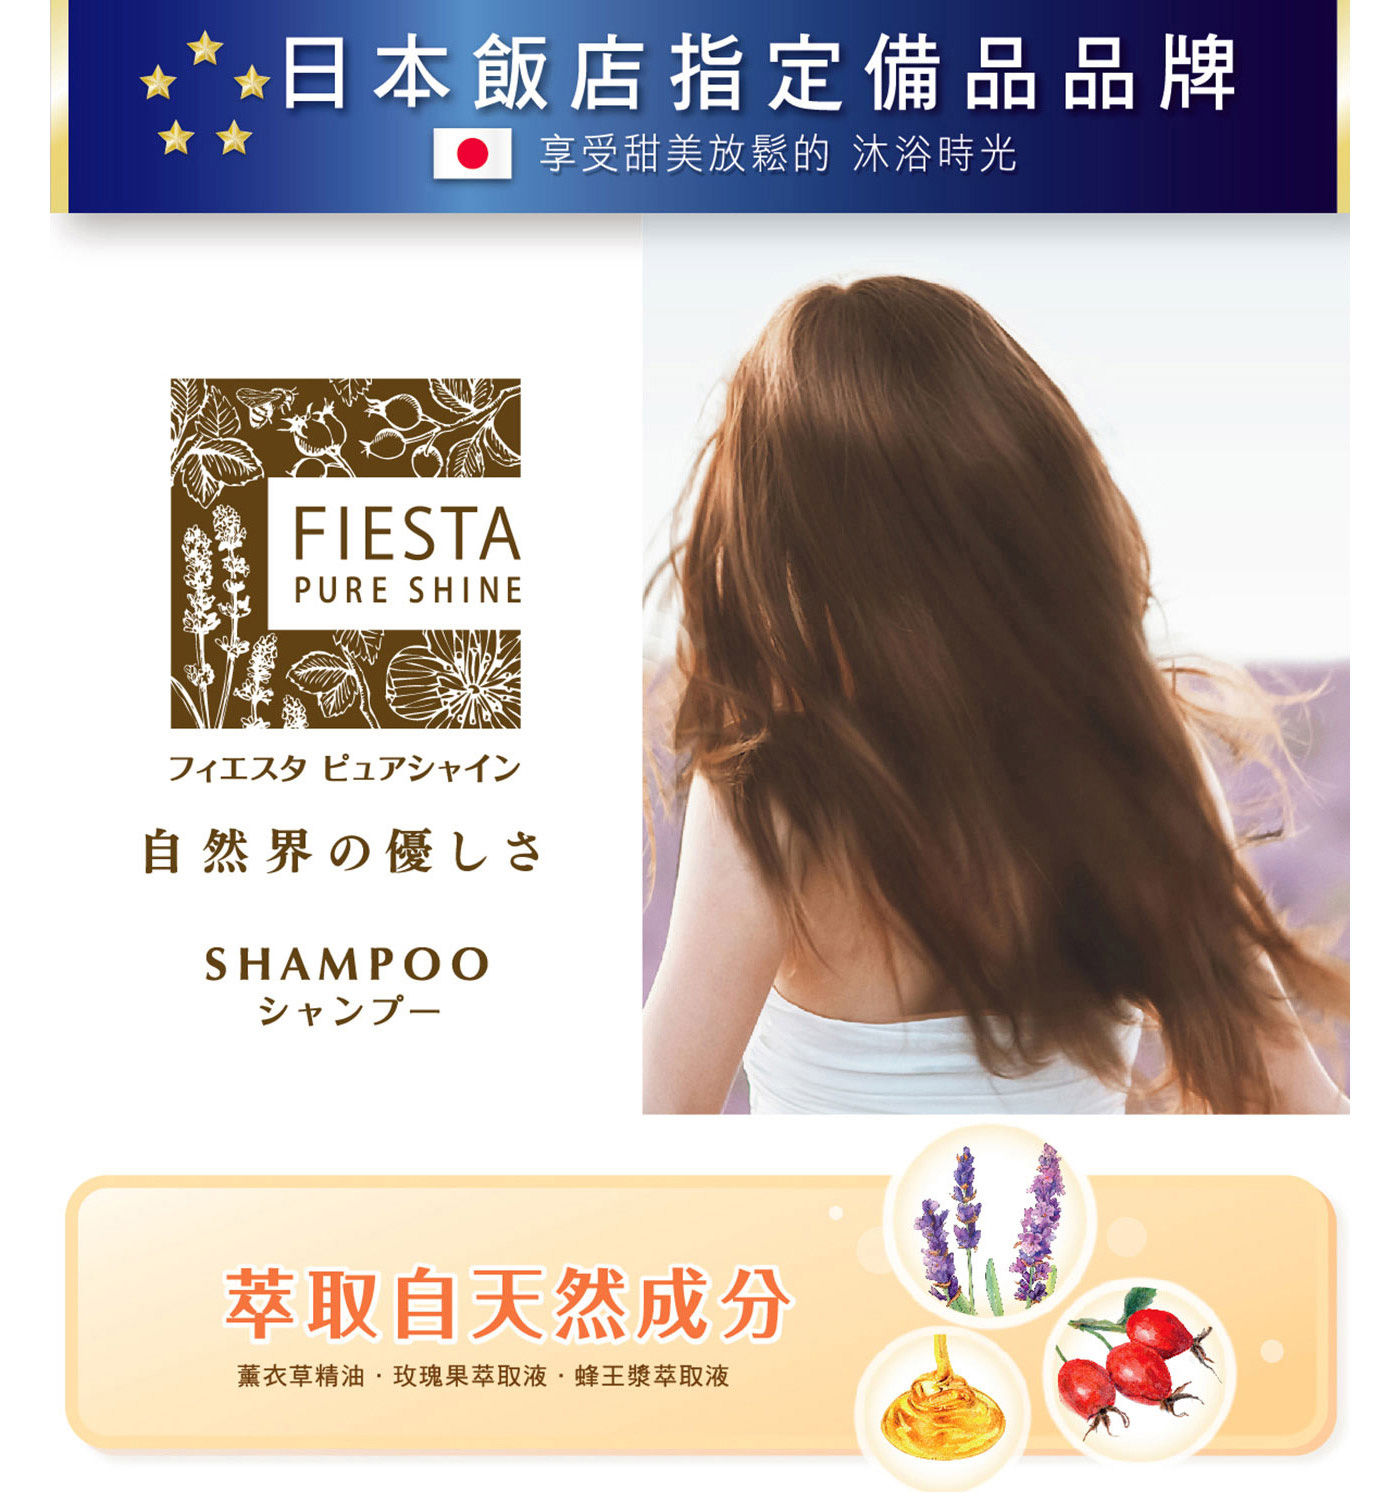 Fiesta Pure Shine 洗髮精套裝組日本飯店指定備品品牌